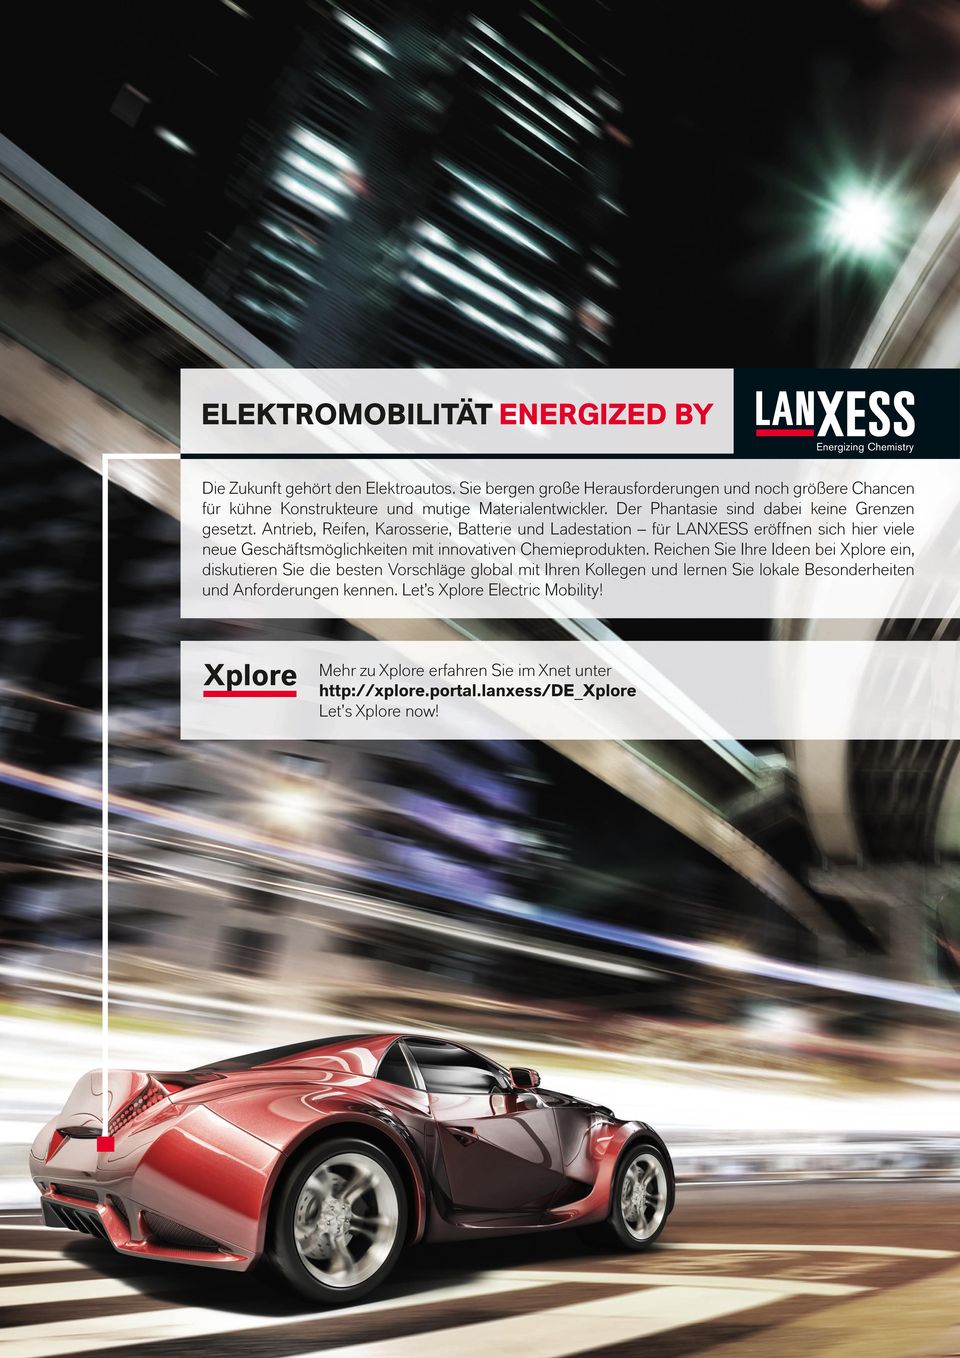 Antrieb, Reifen, Karosserie, Batterie und Ladestation für LANXESS eröffnen sich hier viele neue Geschäftsmöglichkeiten mit innovativen Chemieprodukten.